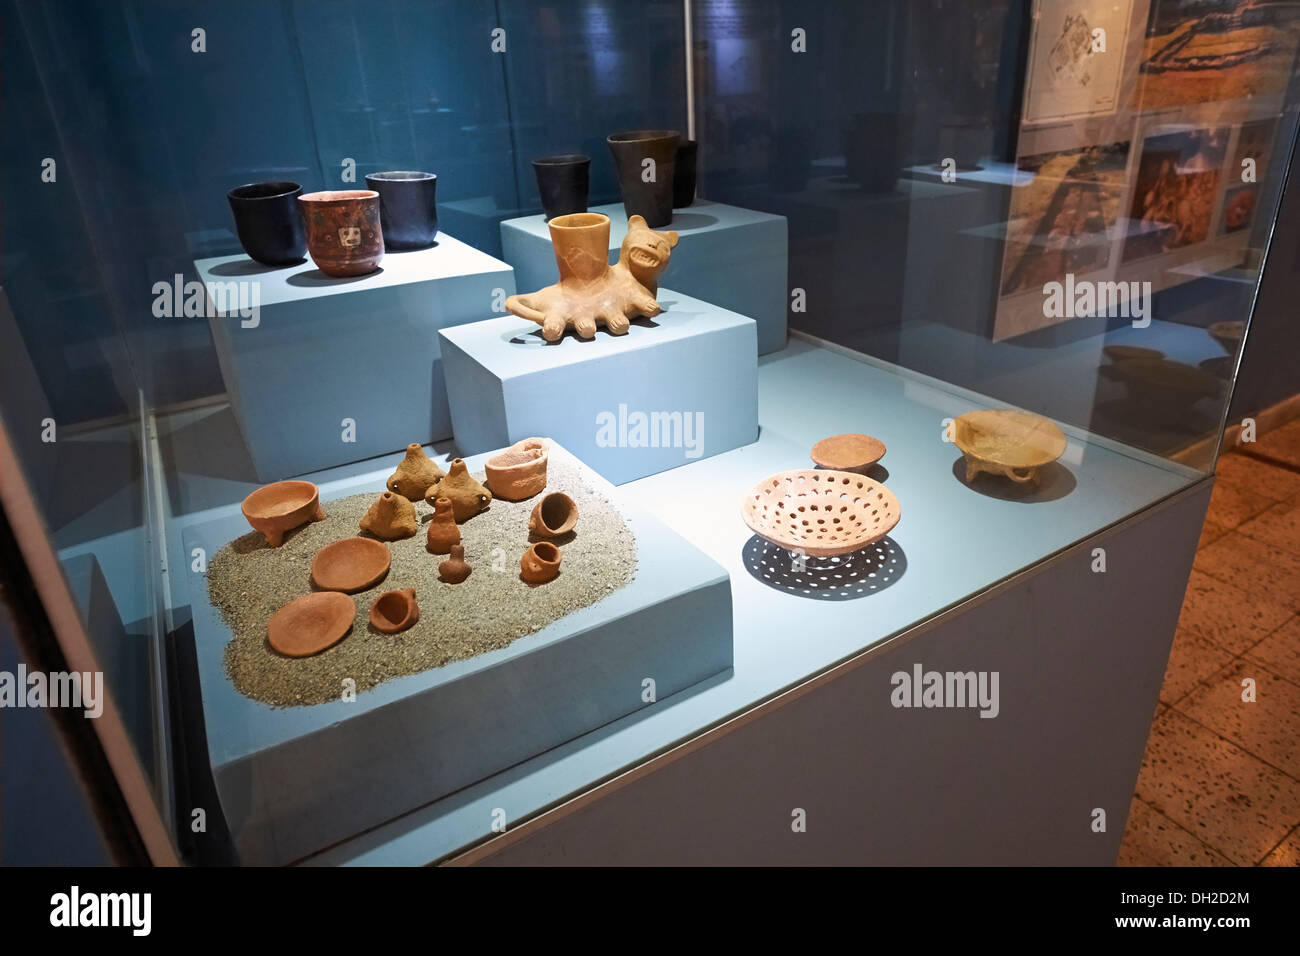 Artefactos en el Museo Arqueológico de Ancash, Huaraz, Perú. Foto de stock